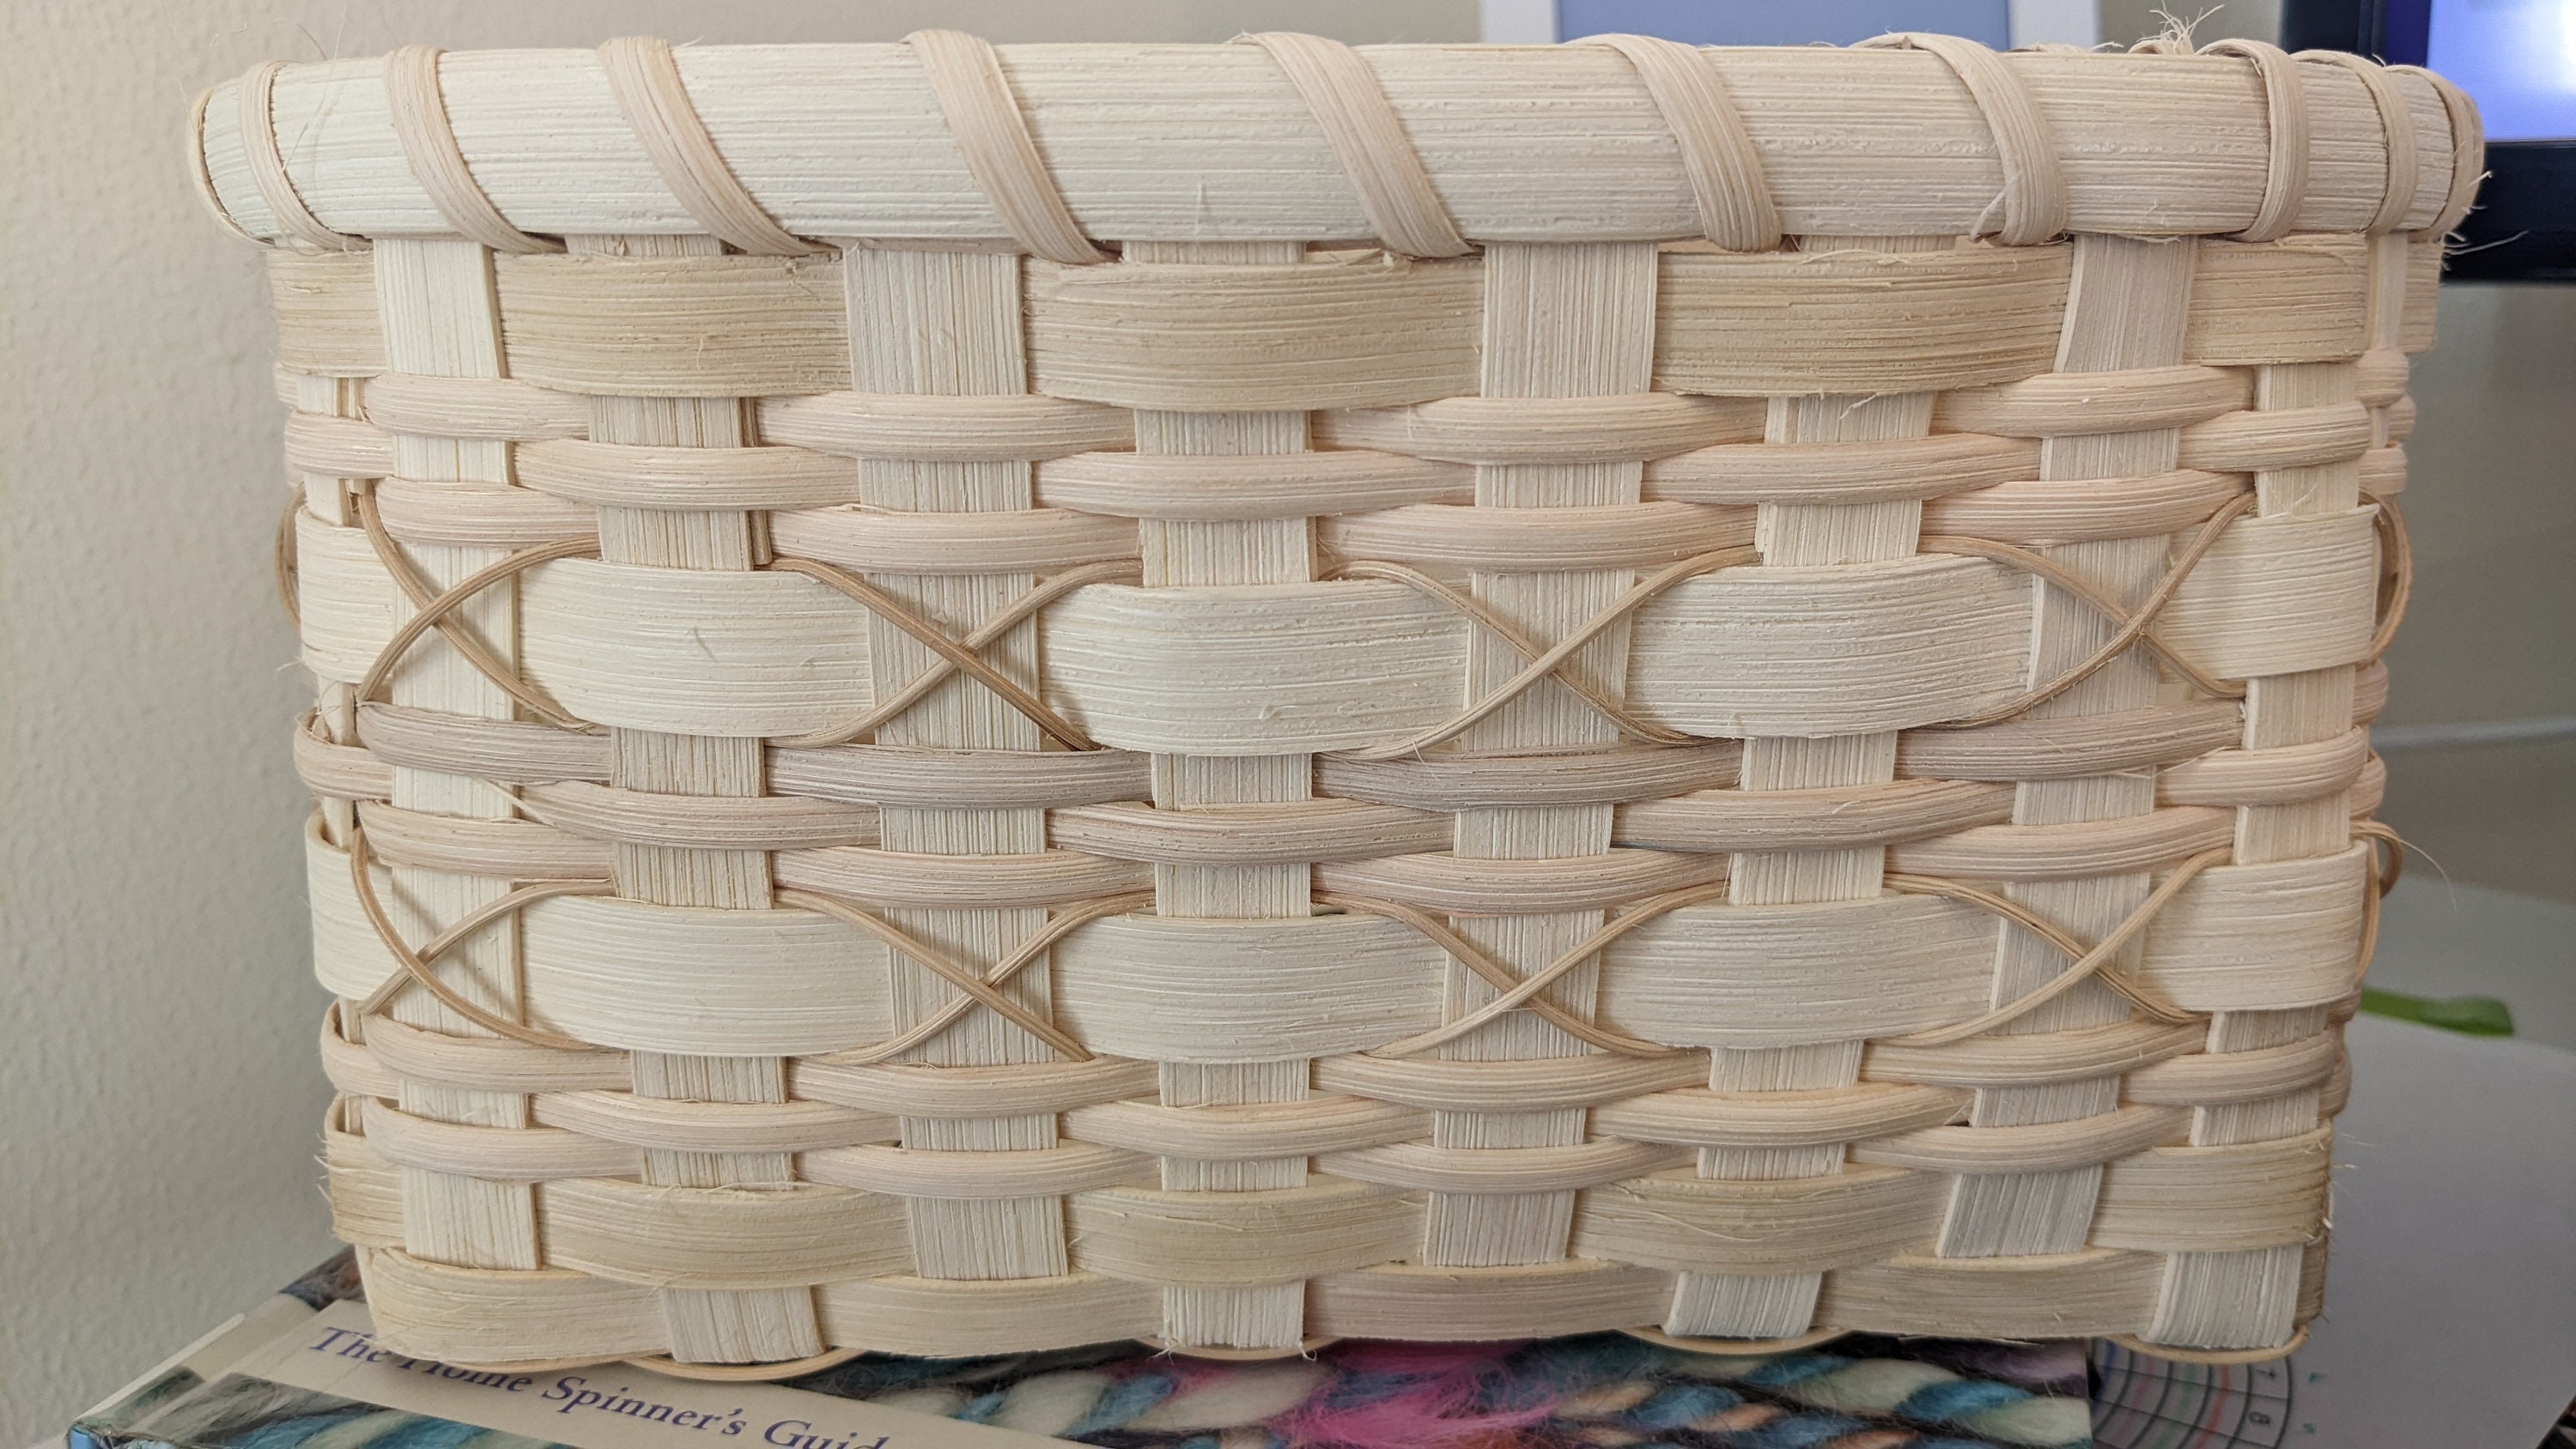 Basket Weaving Kit: Basic Square Basket